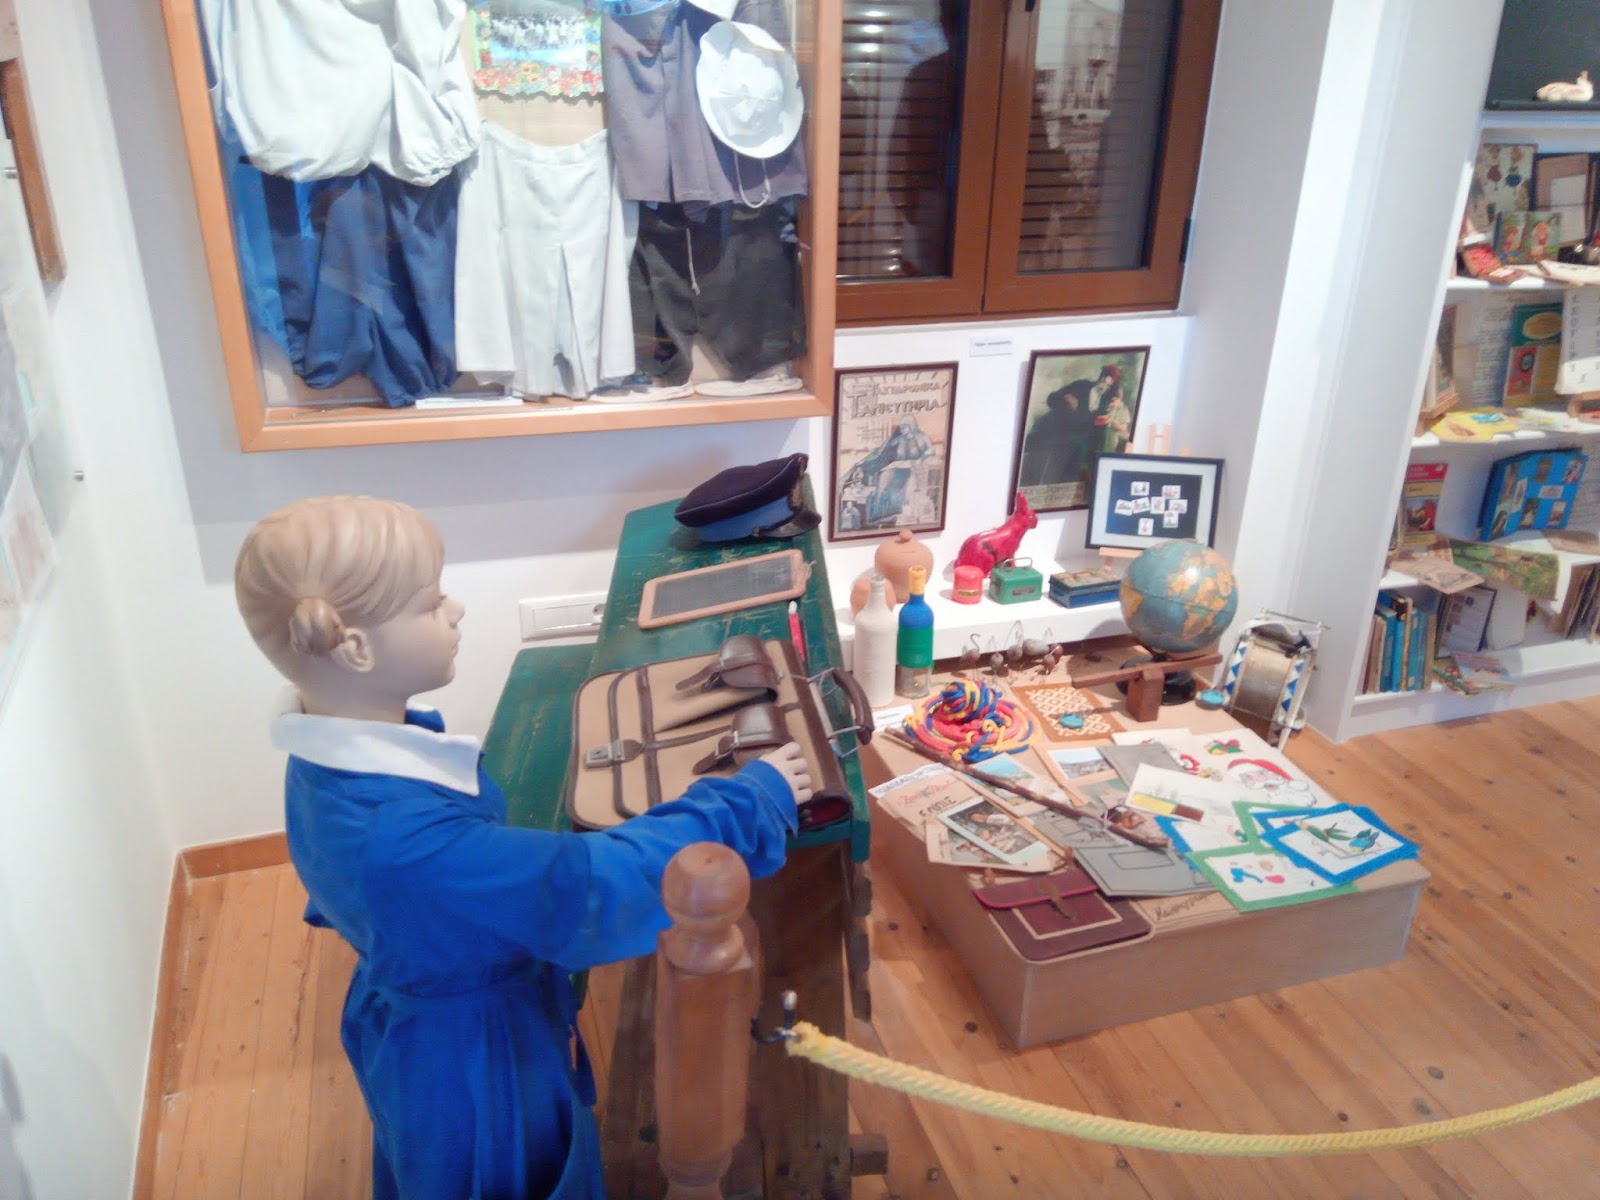 ΕΡΜΙΟΝΗ ΞΑΝΑ: 18 Μαΐου ημέρα μουσείων η επίσκεψή μας στο Μουσείο Παιχνιδιών  Ερμιόνης